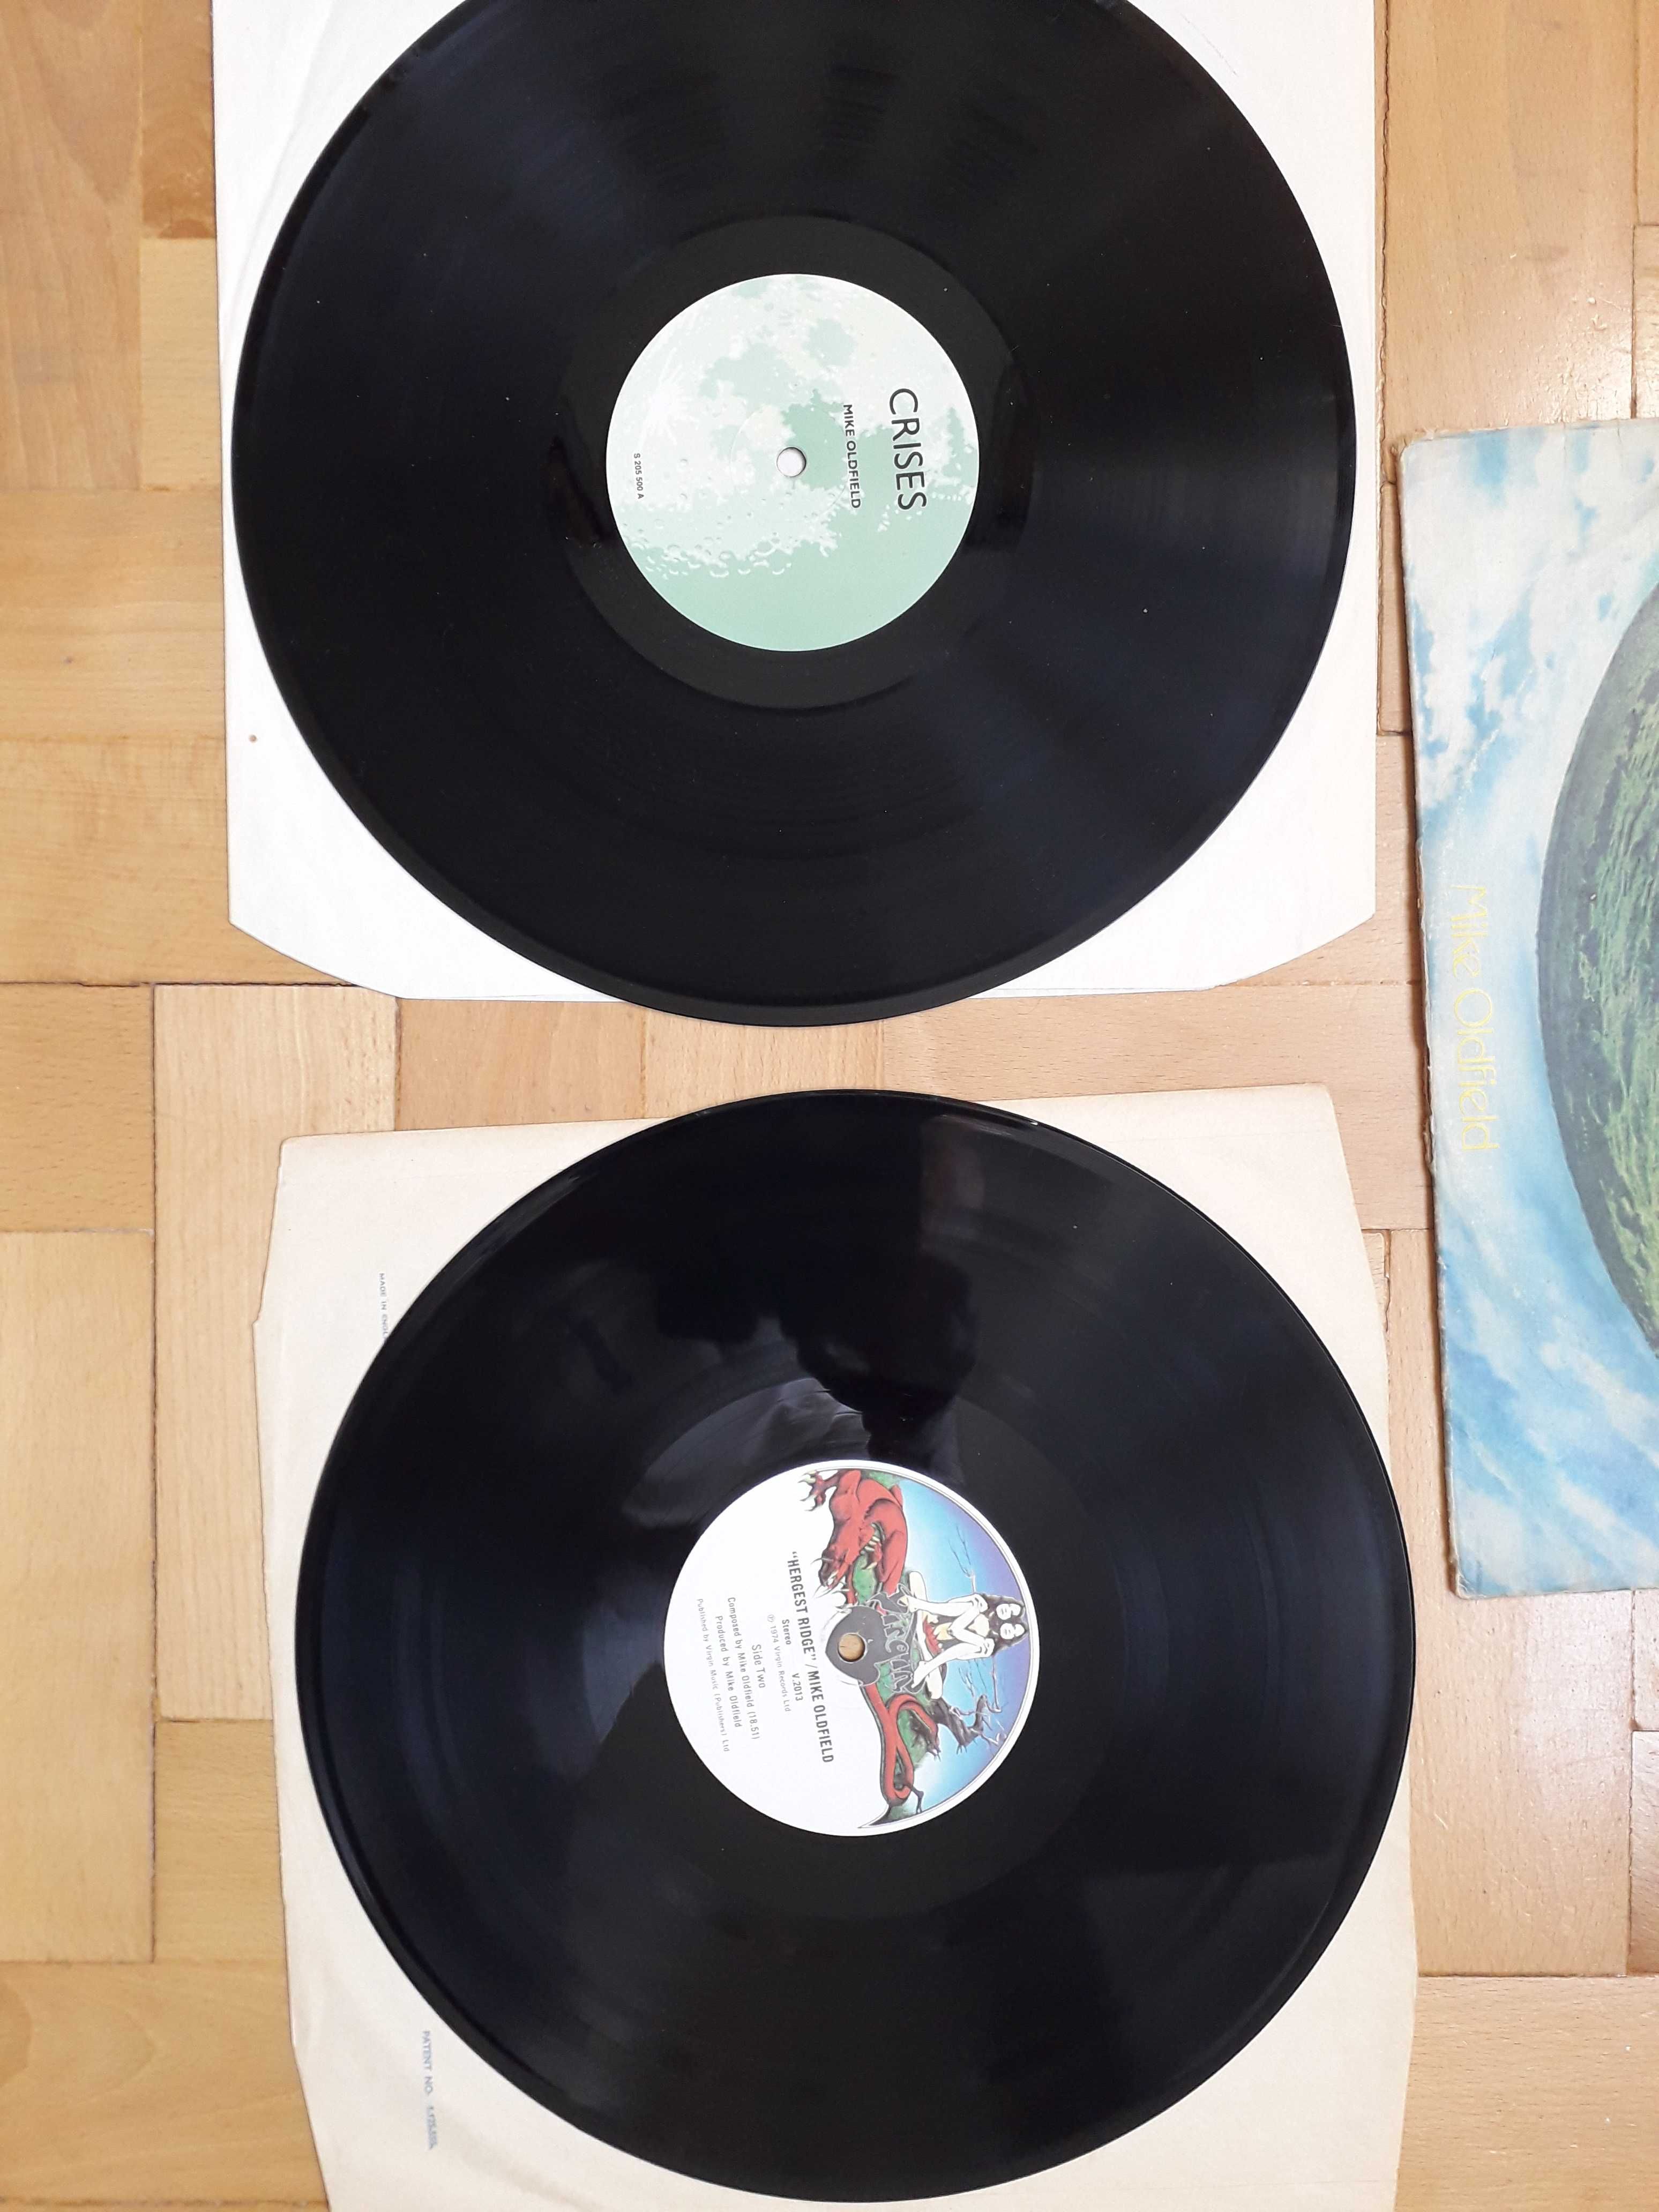 Mike Oldfield -dwie płyty Hergest Ridge + Crises –Virgin Rekords 1974r